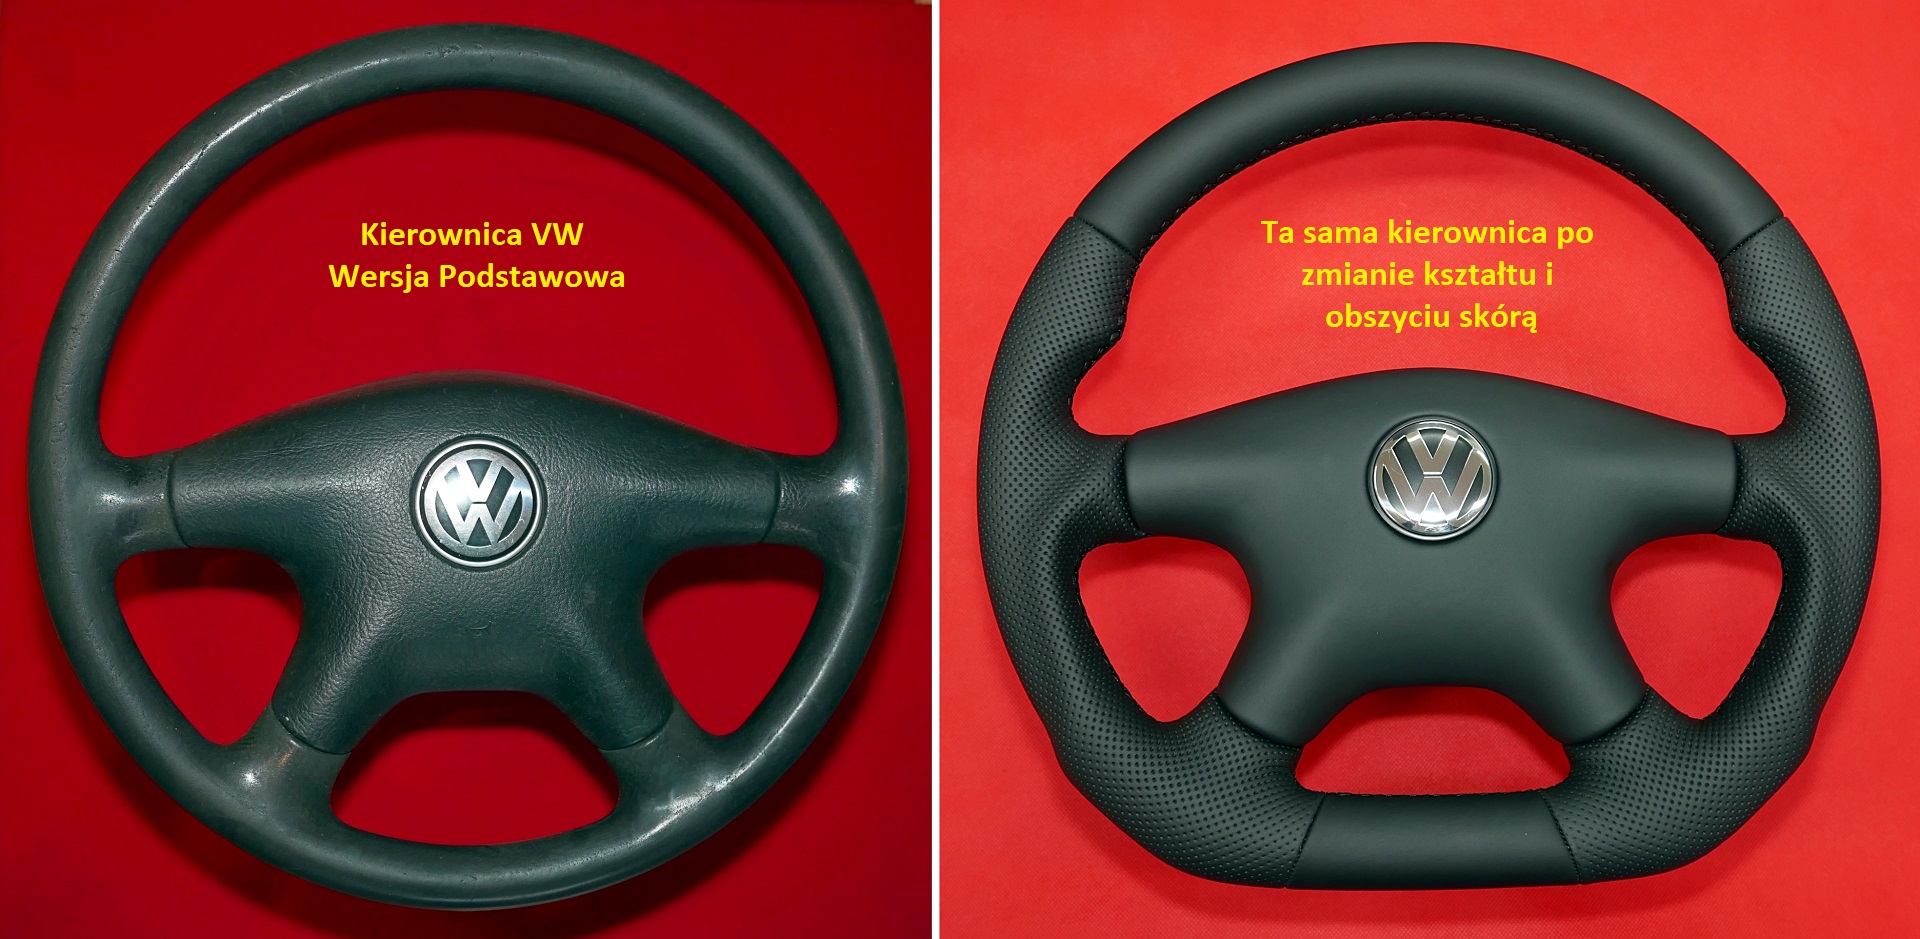 Kierownica VW modyfikacja zmiana kształtu spłaszczenie dołu